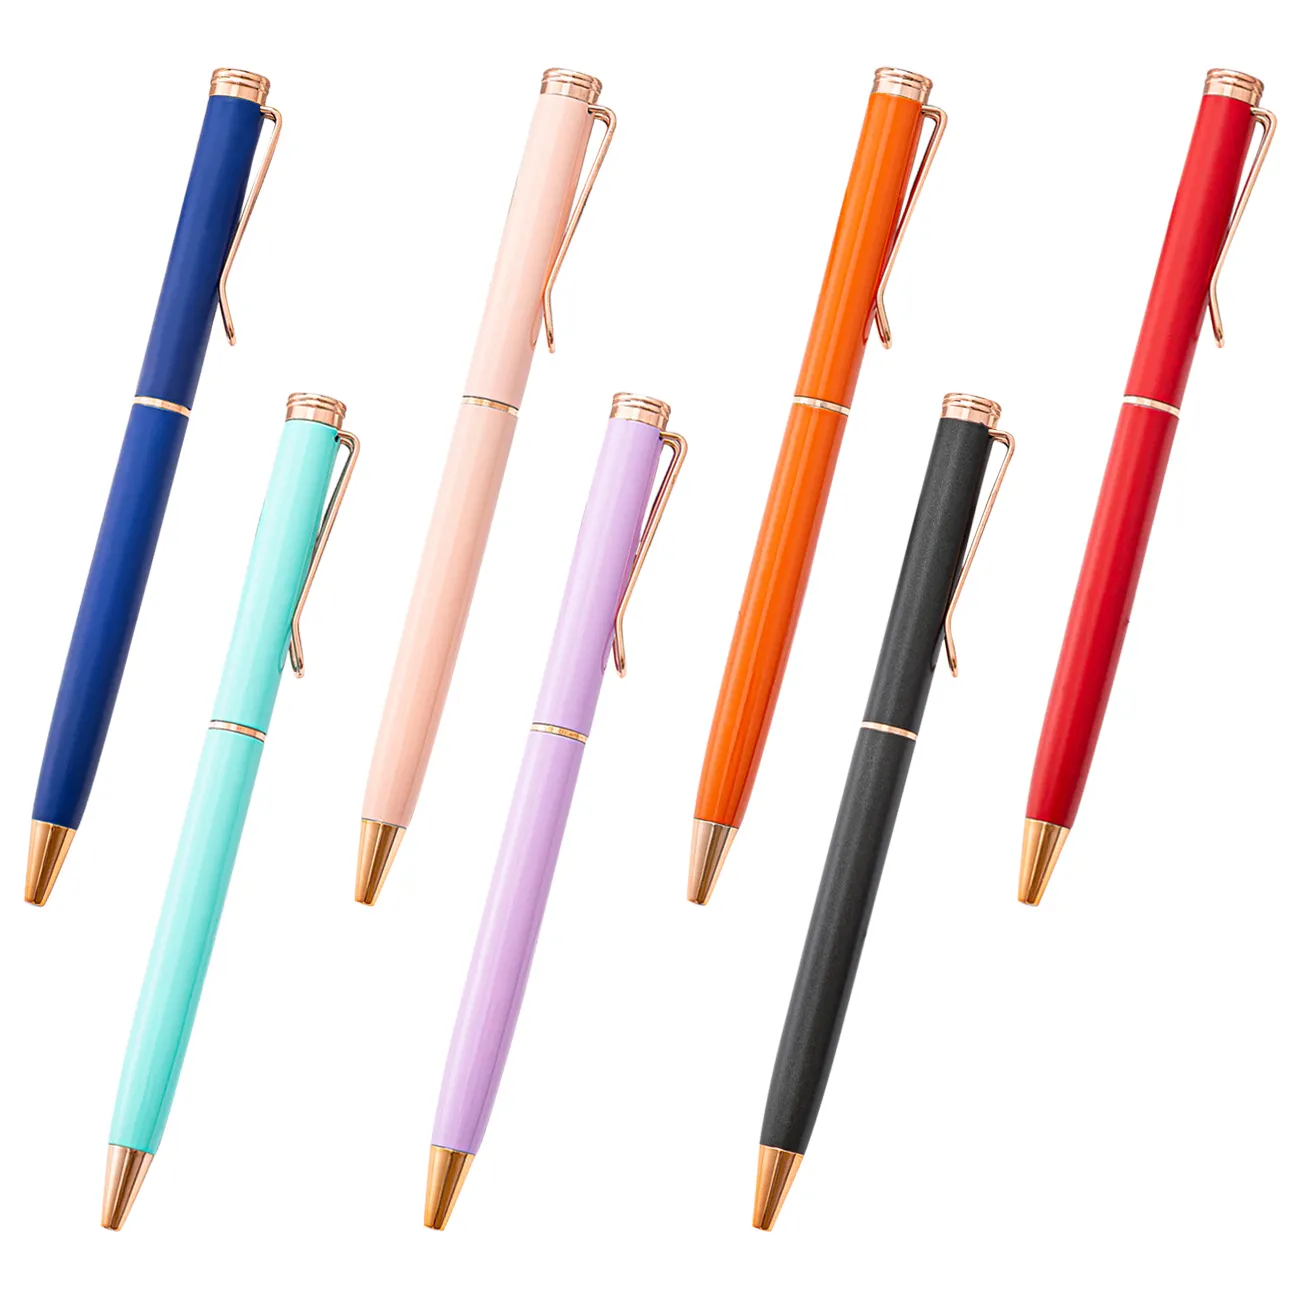 Pronta consegna penne a sfera promozionali in metallo Macaron Color penna a sfera per le imprese